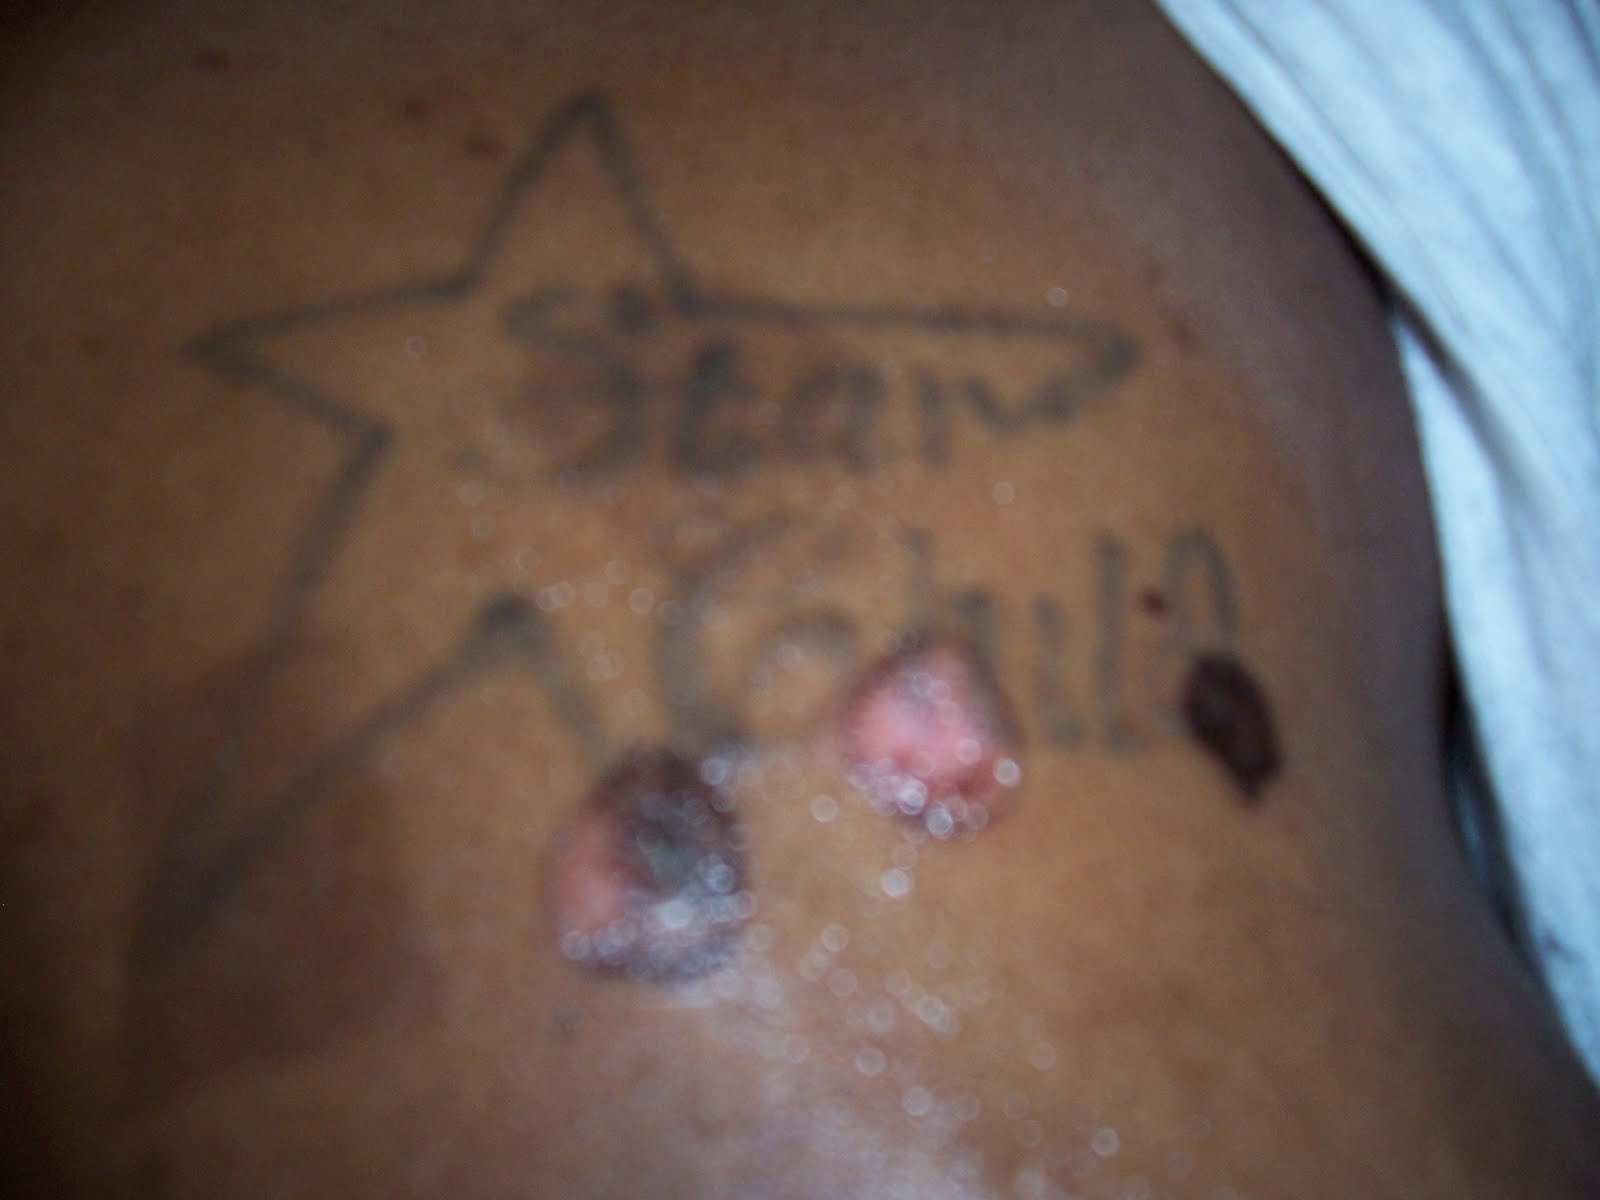 Tattoo removal 4-27-2010